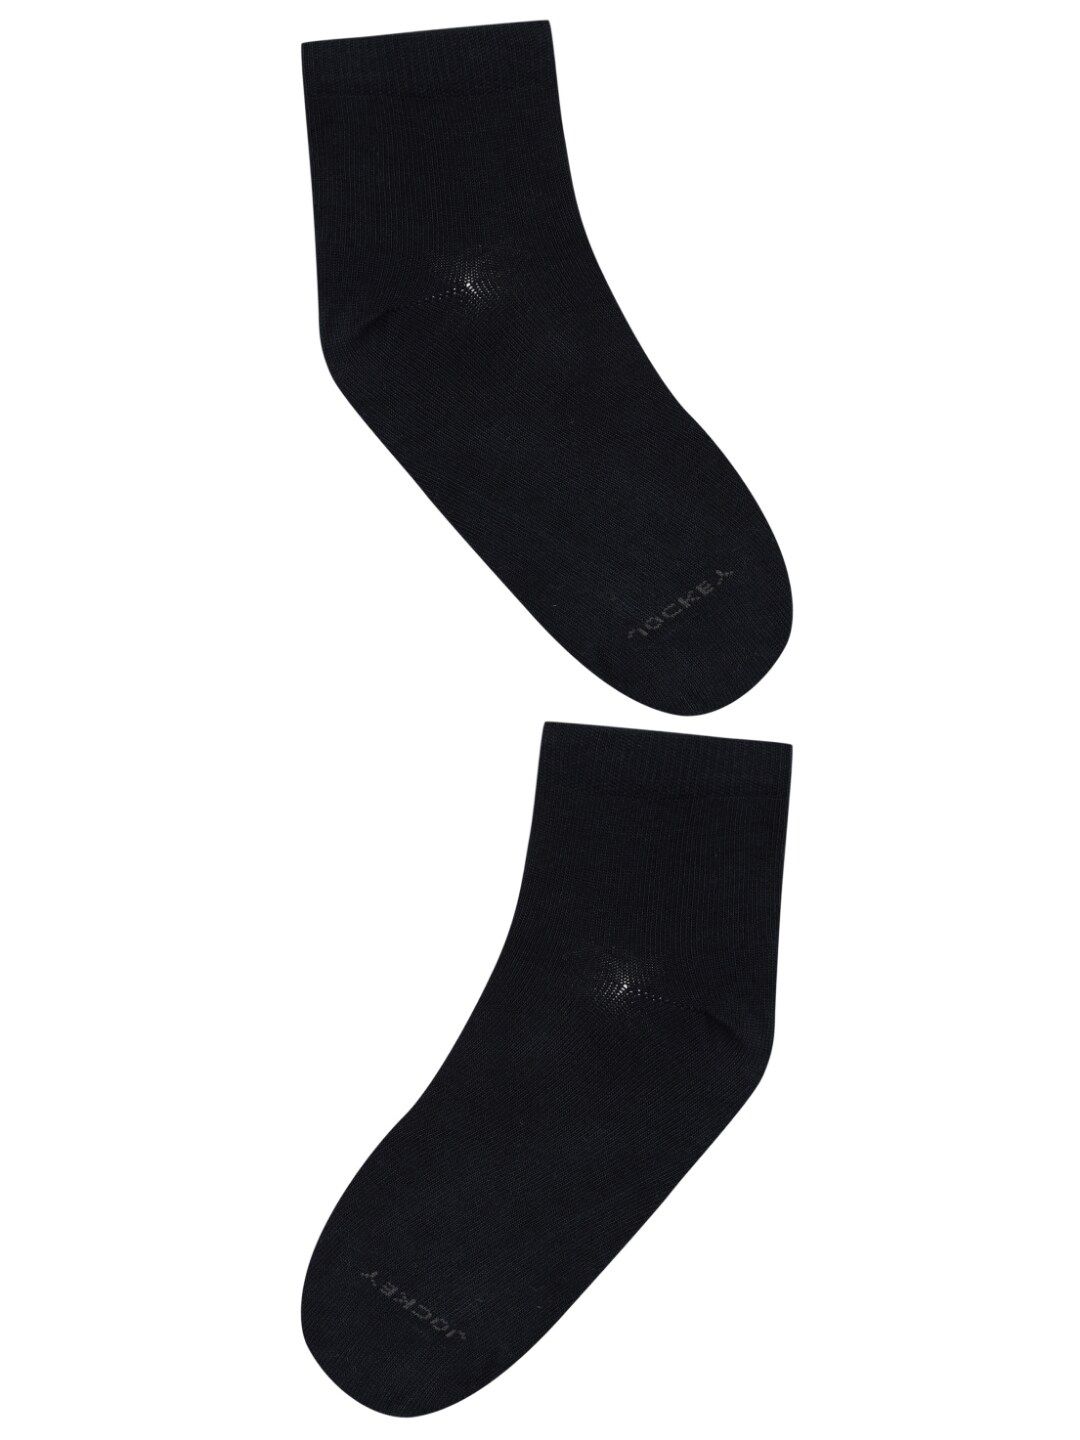 Adult Field Hockey Socks FH500 - Black KOROK